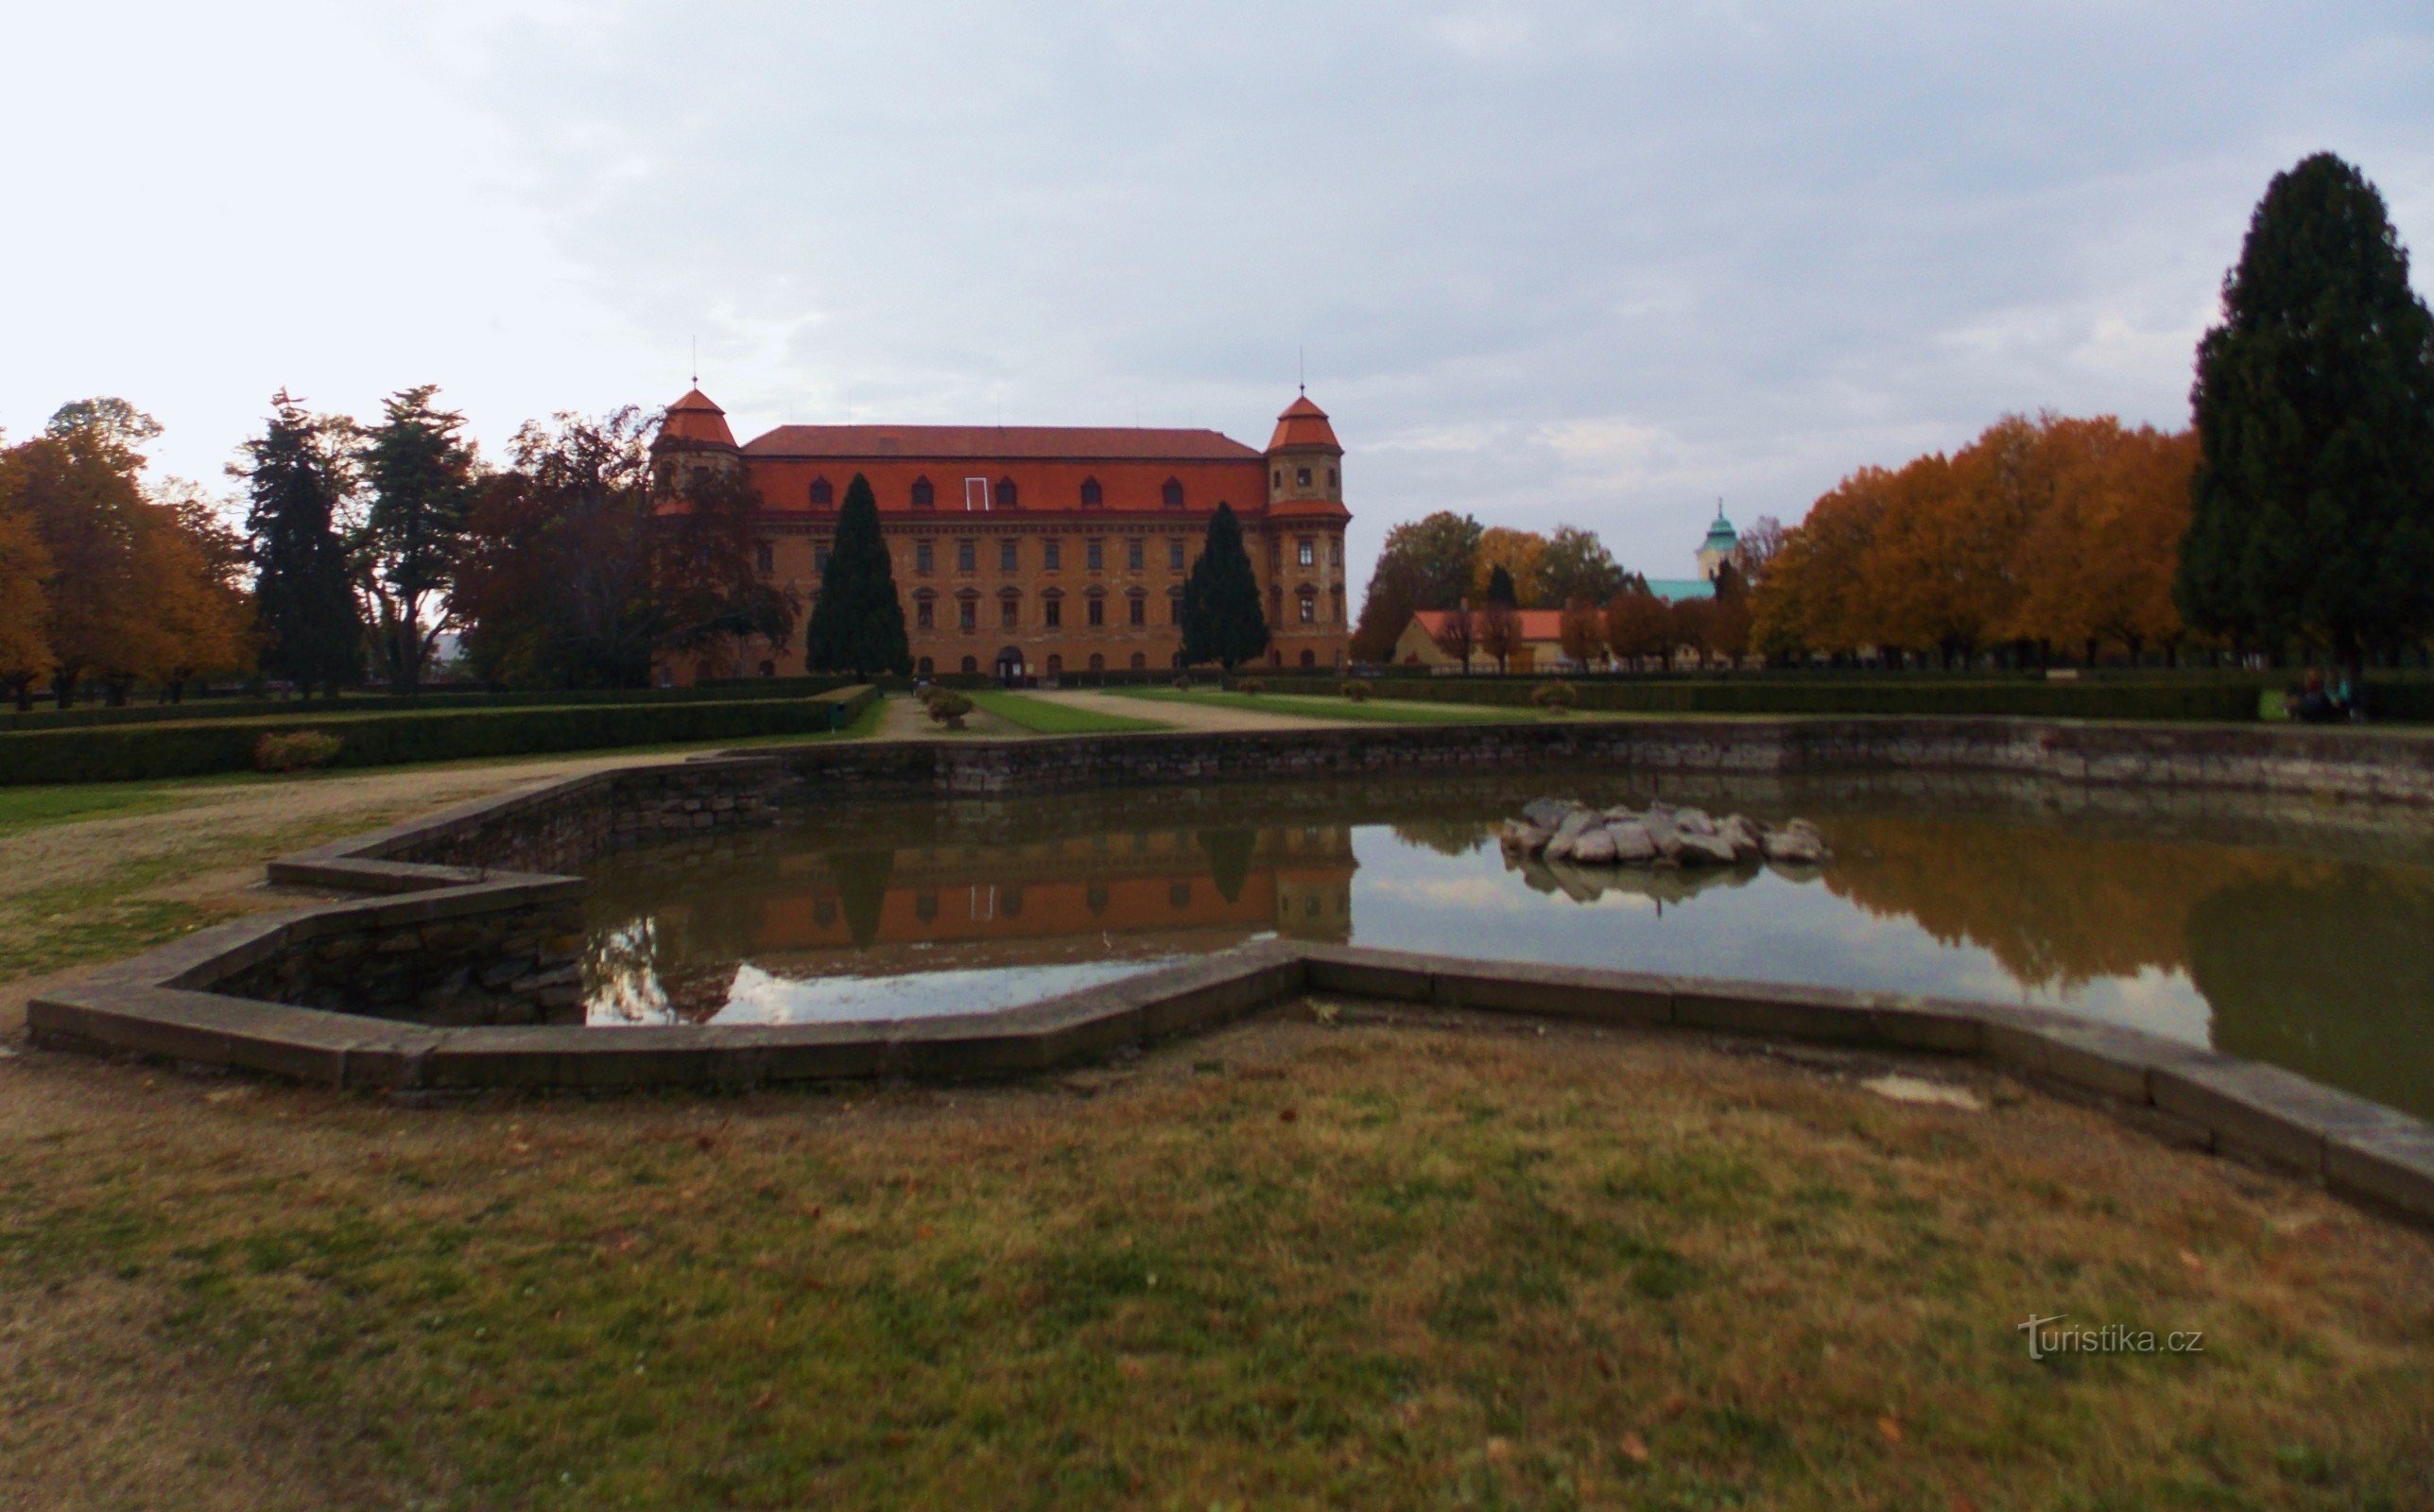 Albero commemorativo davanti al castello di Holešov